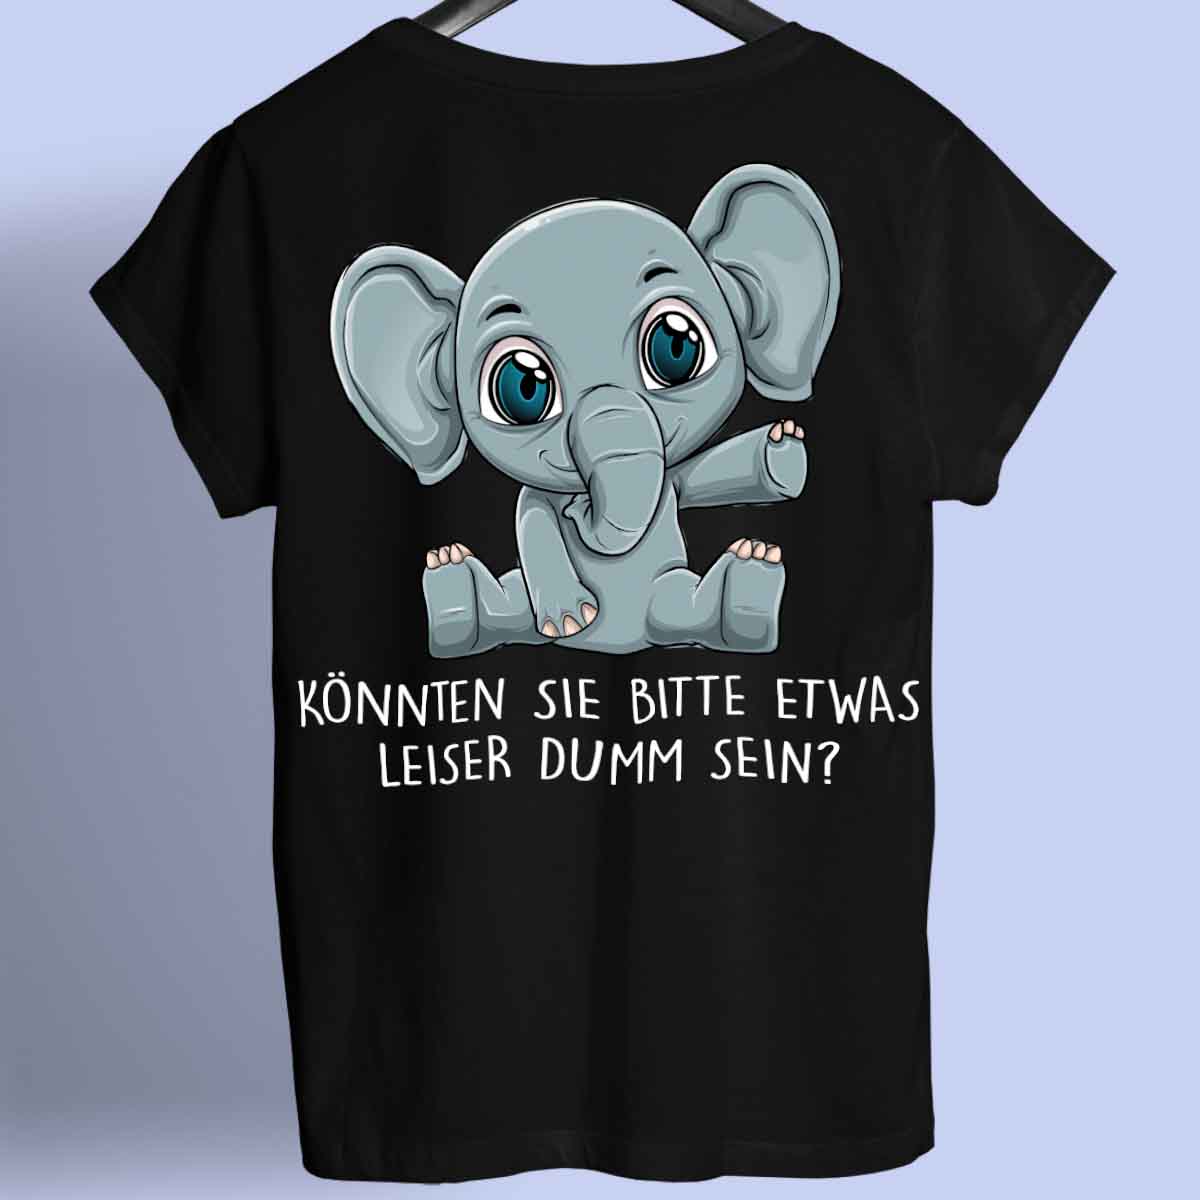 Leise Baby Elefant - Shirt Rückendruck